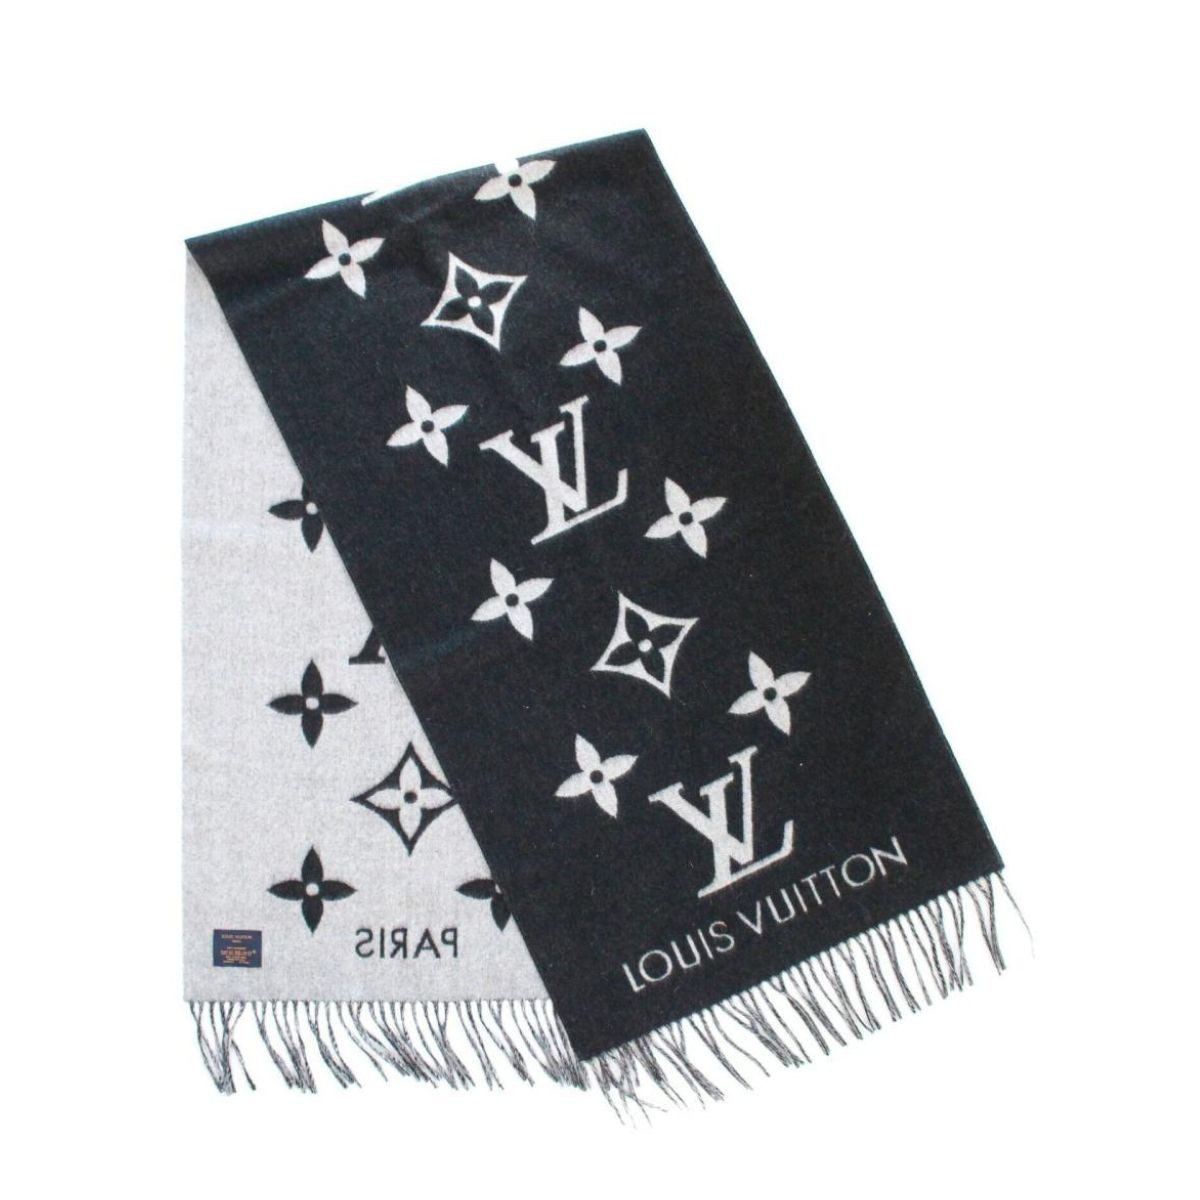 Louis Vuitton Black and Grey Cashmere Reykjavik Monogram Scarf at